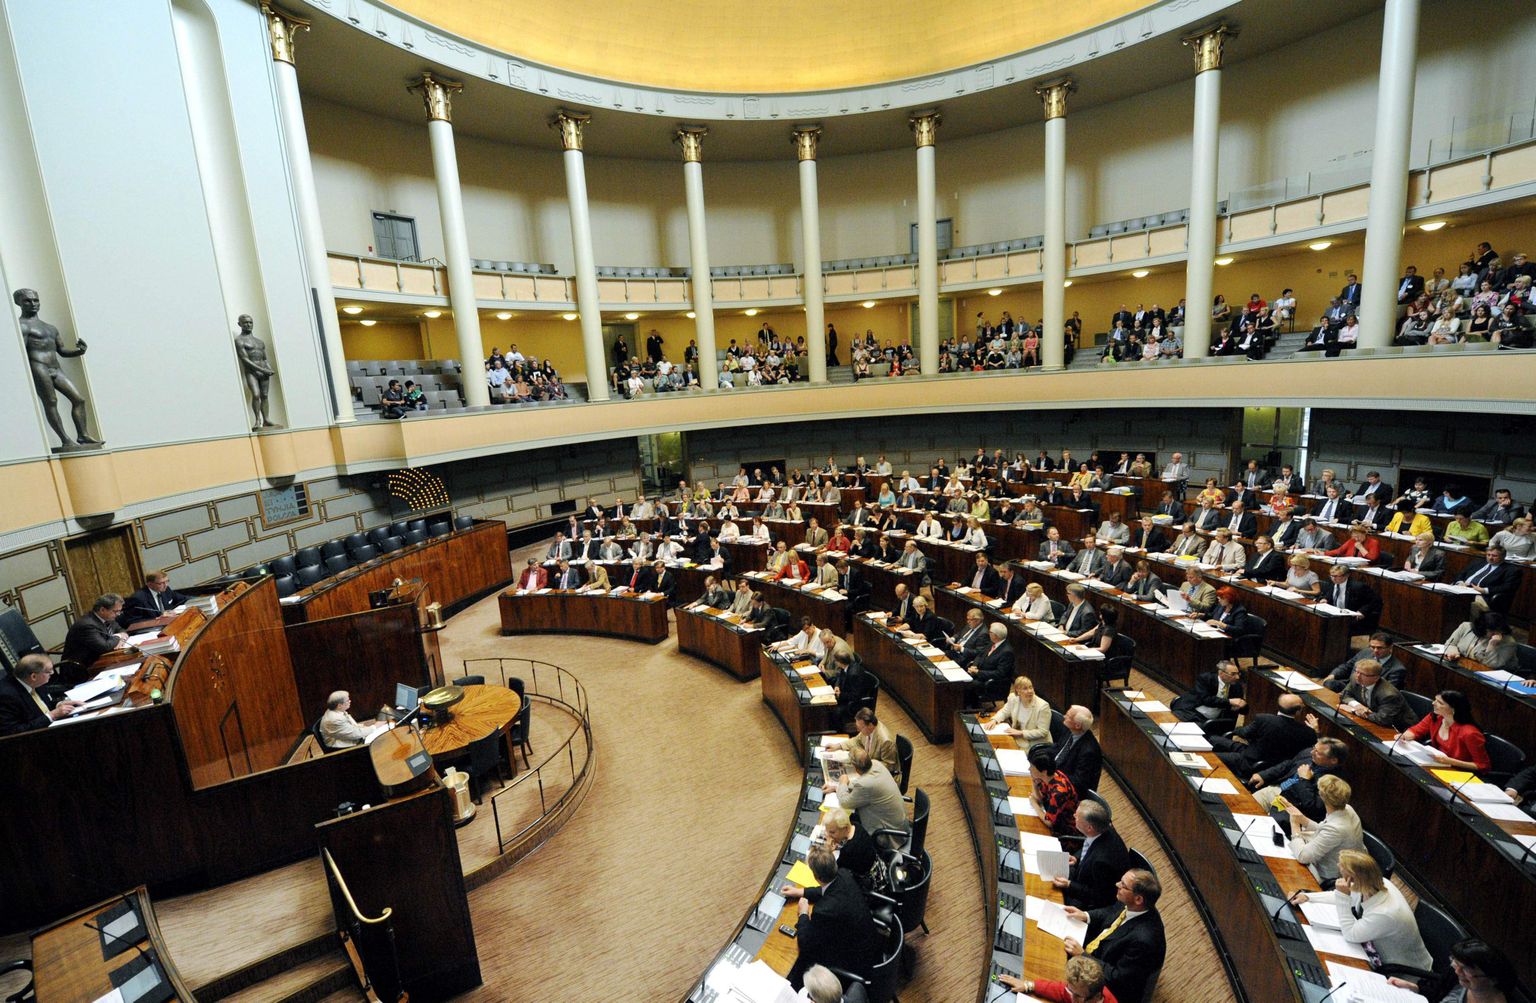 Vaade Soome parlamendi istungitesaali.